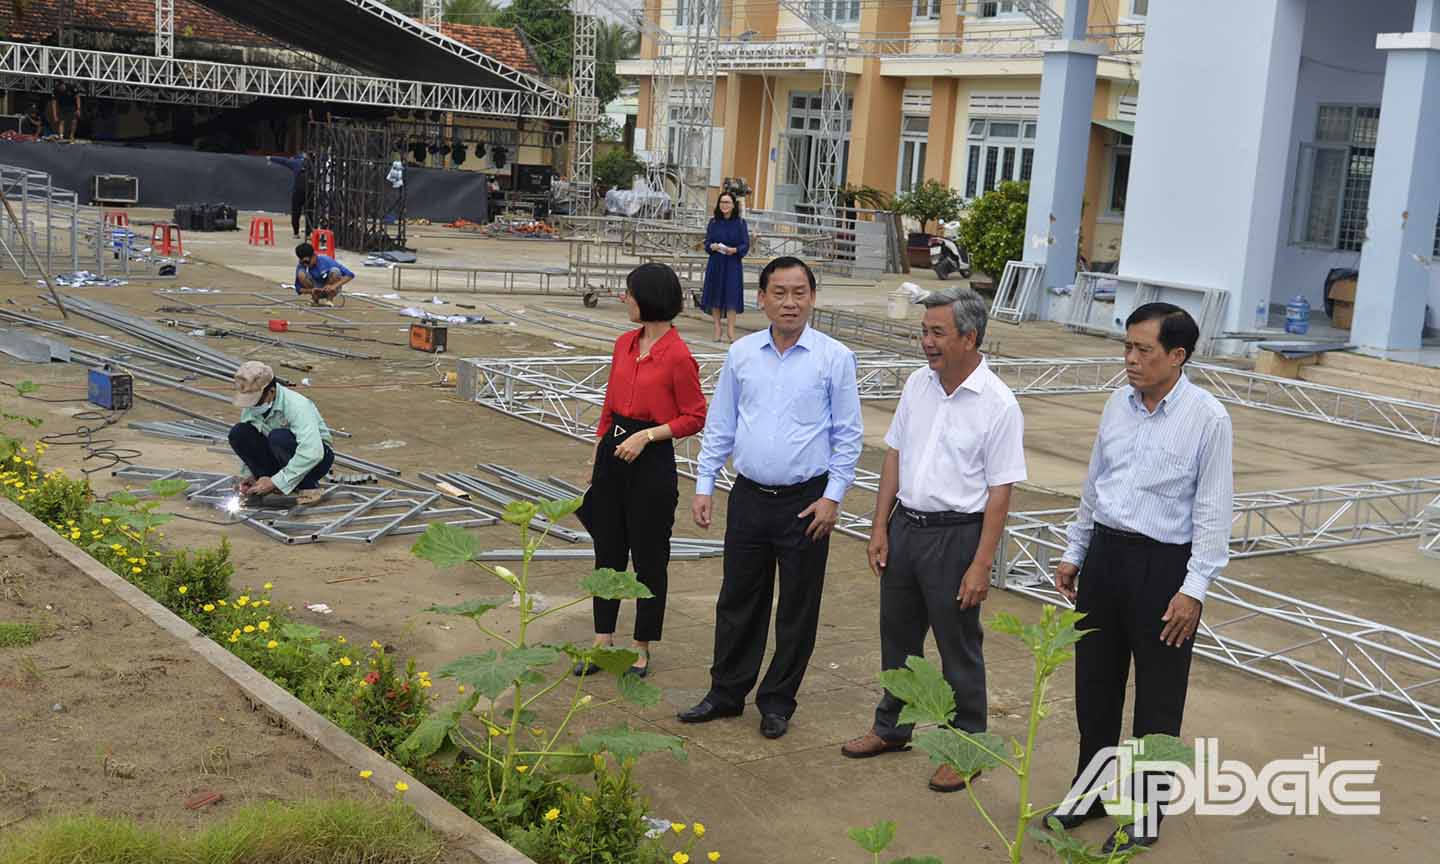 Đồng chí Nguyễn Văn Vĩnh (thứ 2 từ trái sang) kiểm tra công tác chuẩn bị sân khấu cho lễ khai mạc Lễ hội tại UBND xã Đông Hòa Hiệp.